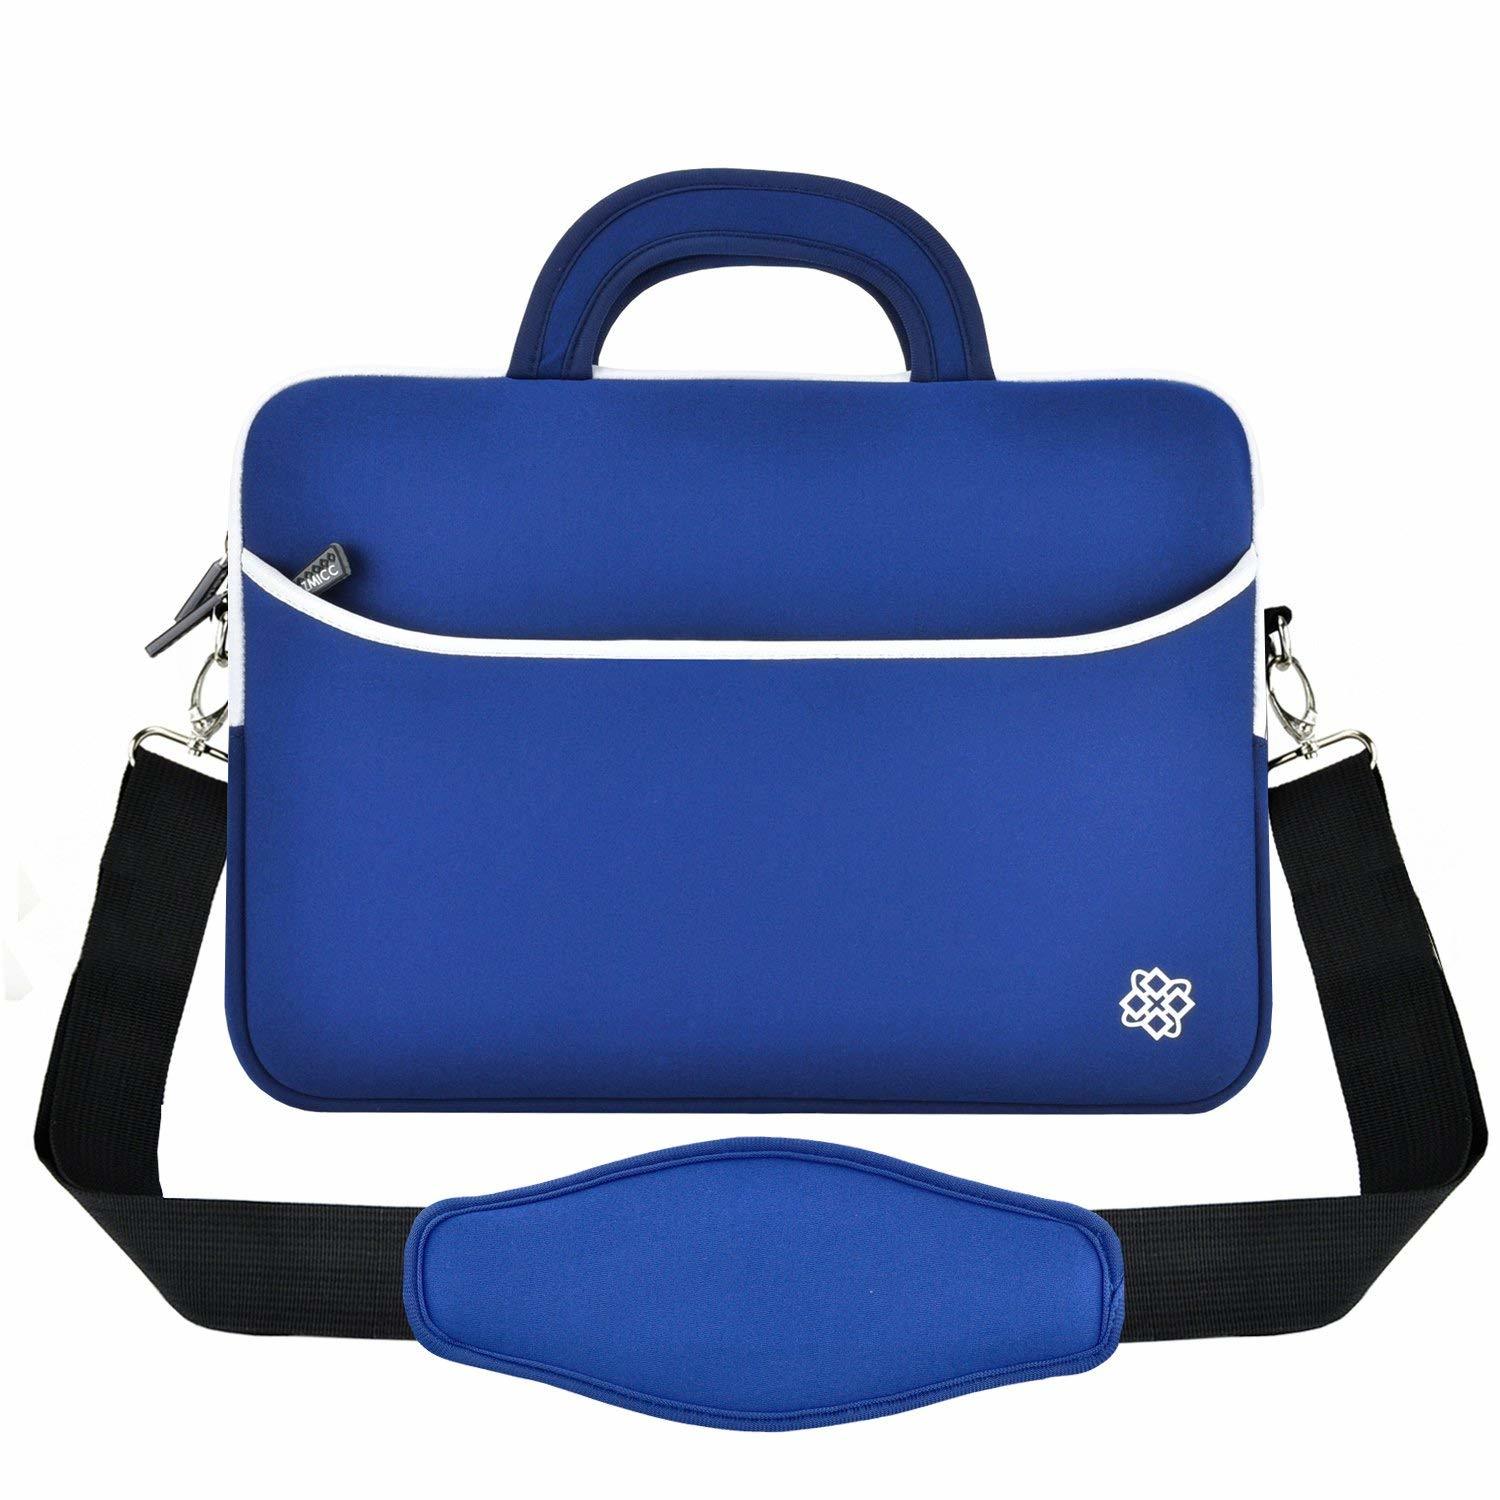 Prosperity protected neoprene travel bag carrying case for travel-1